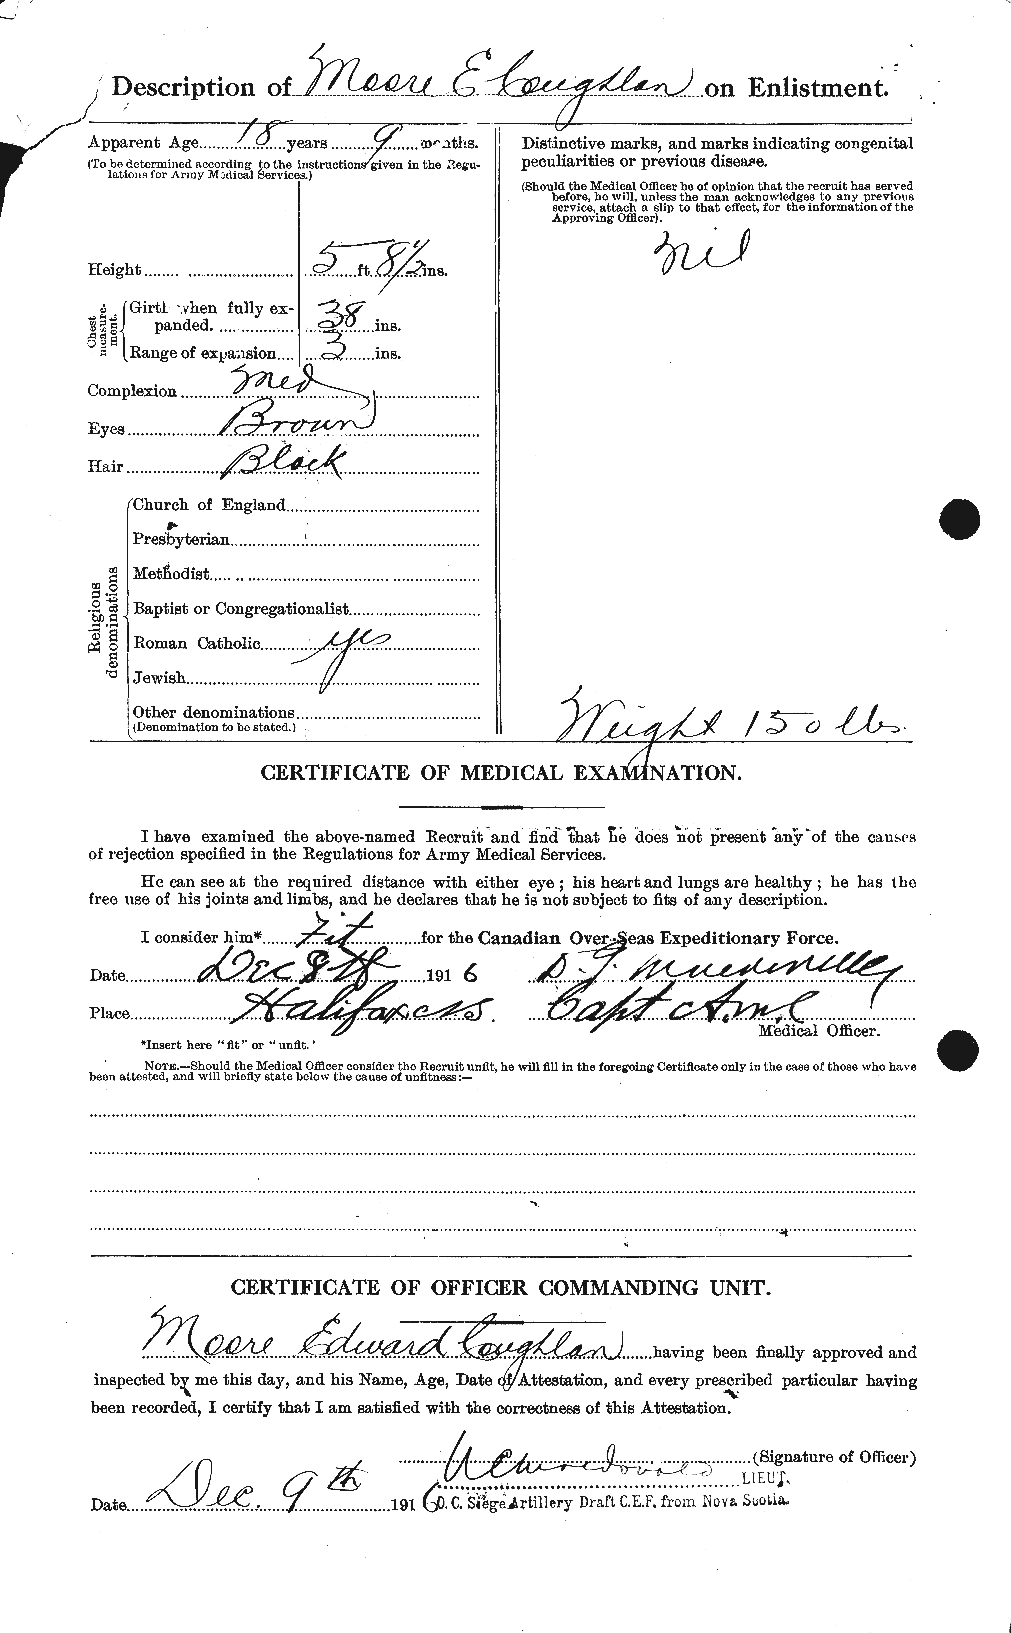 Dossiers du Personnel de la Première Guerre mondiale - CEC 059193b